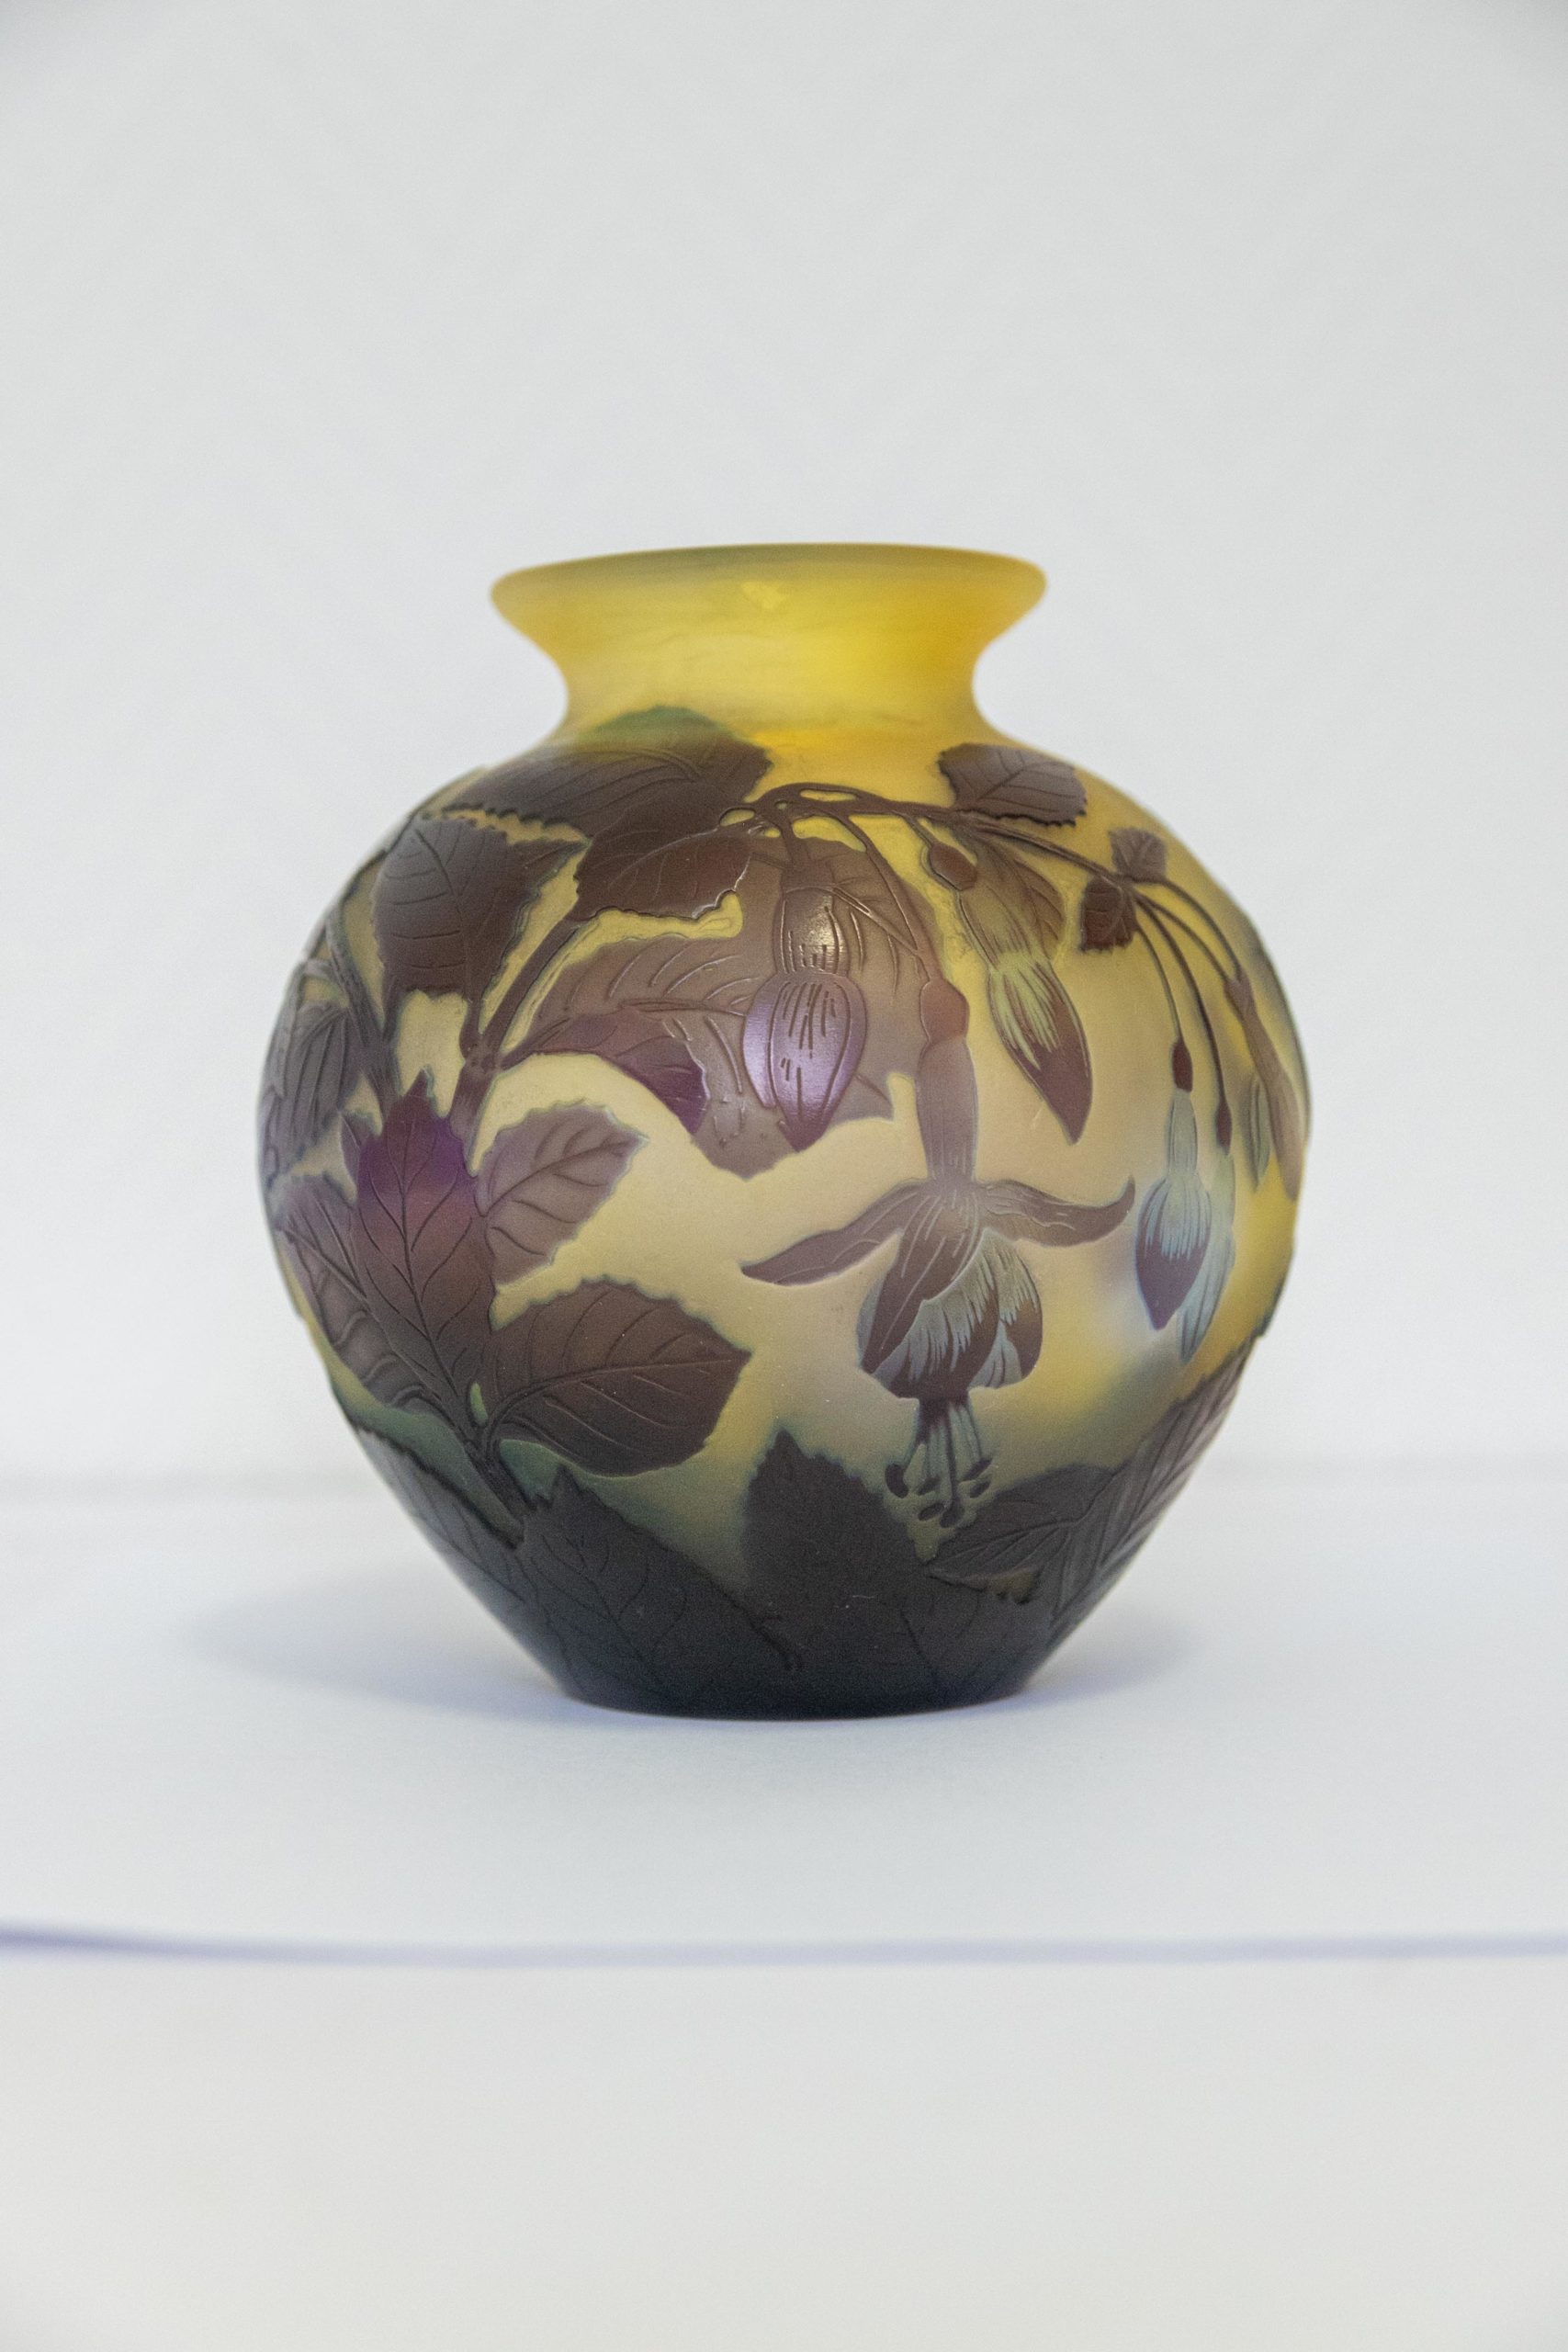 Vase-verrerie-nancy-art-nouveau-Emile-gallé-vase-gallé-authentique-signature-antiquaire-aurore-morisse-auroremorisse-affaire-conclue-liège-paris-antiquités1